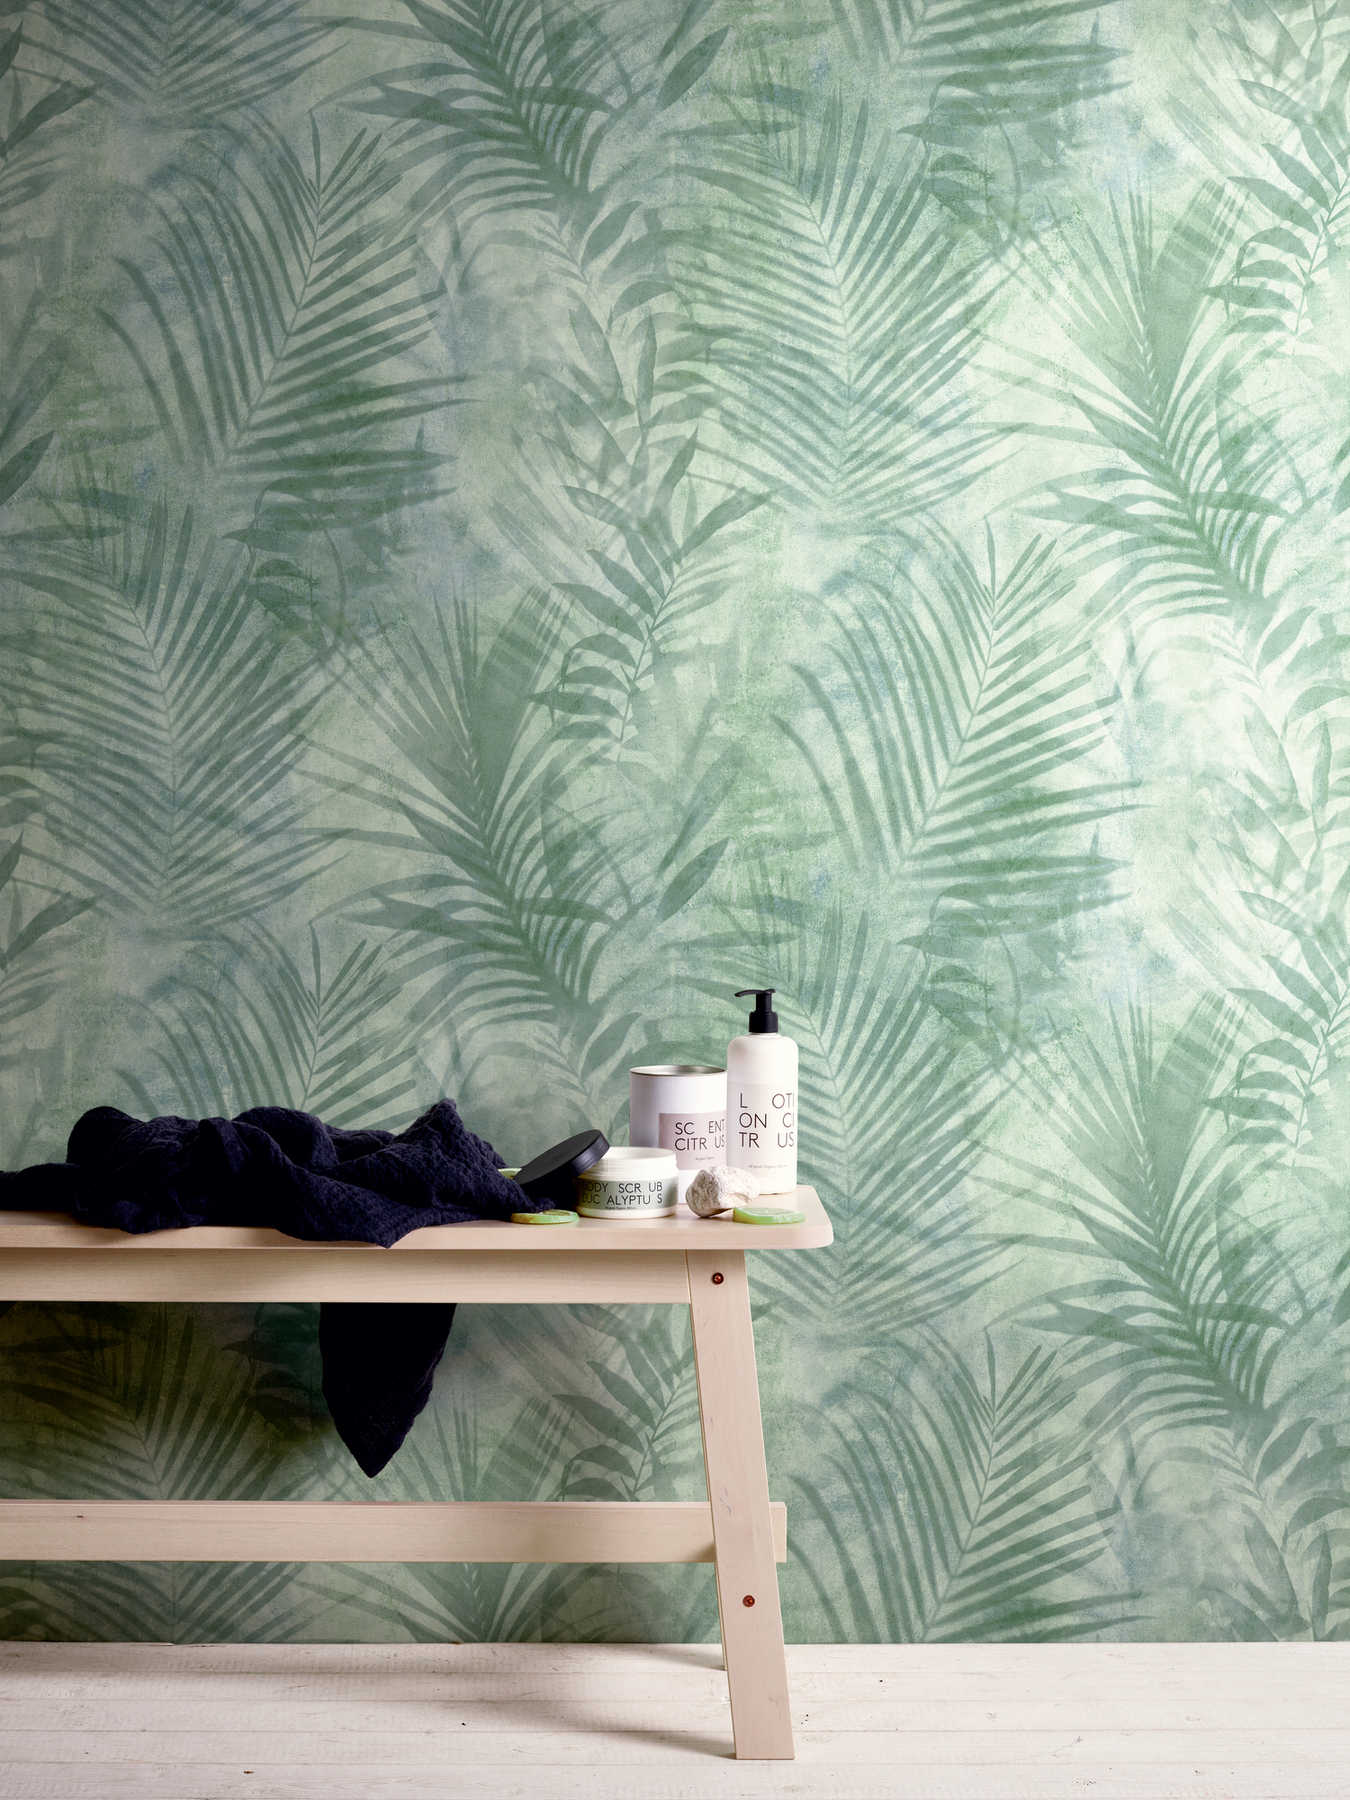             Papier peint motif palmier en lin - vert, bleu, gris
        